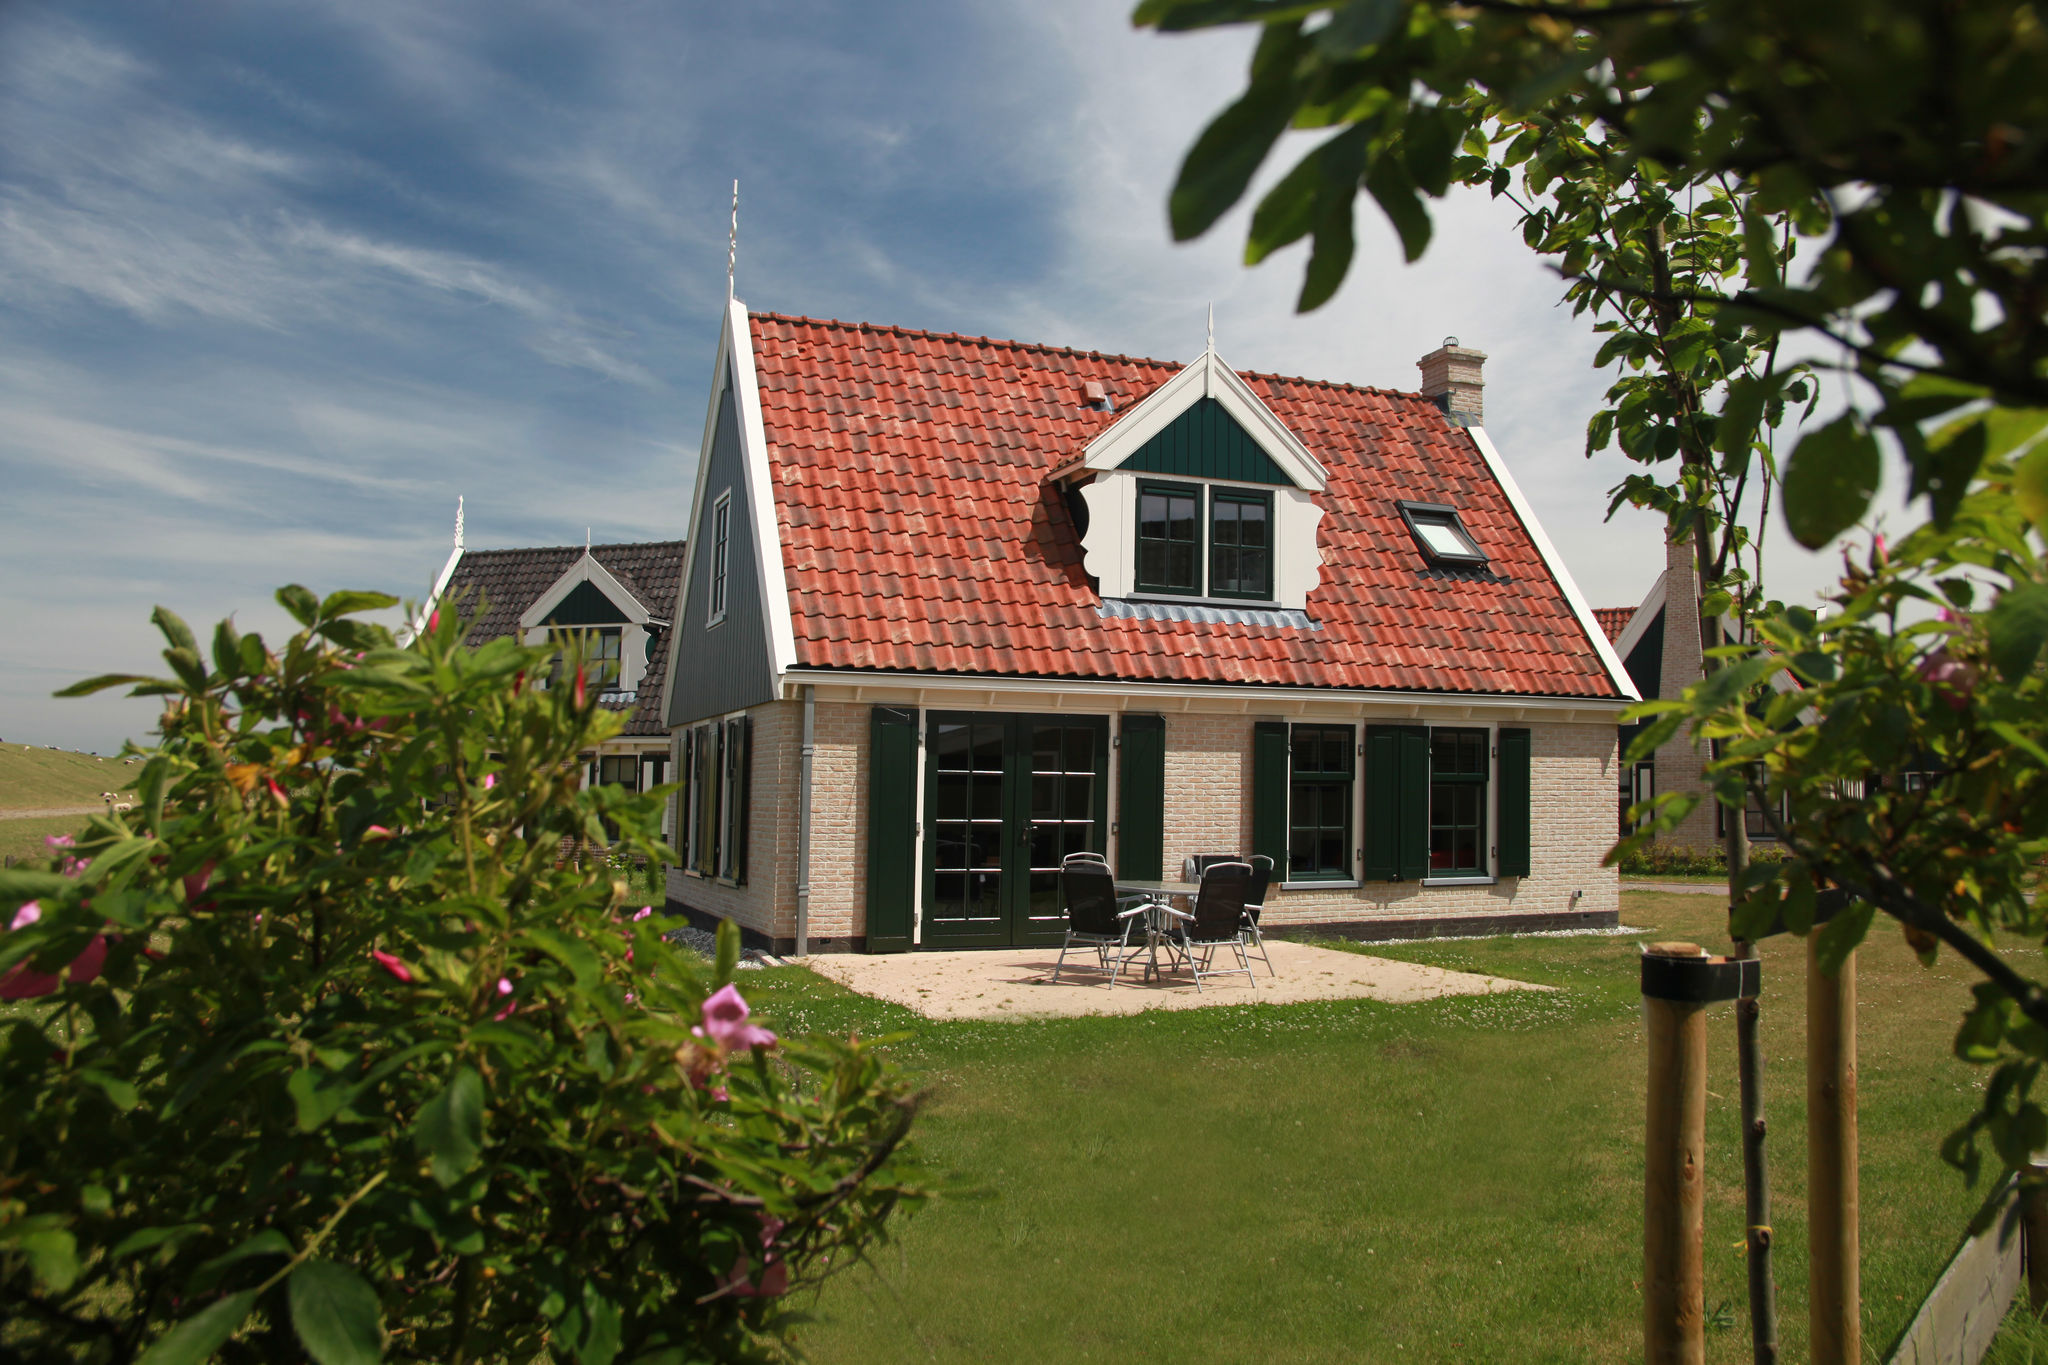 Comfy villa in Wieringer style near the Wadden Sea